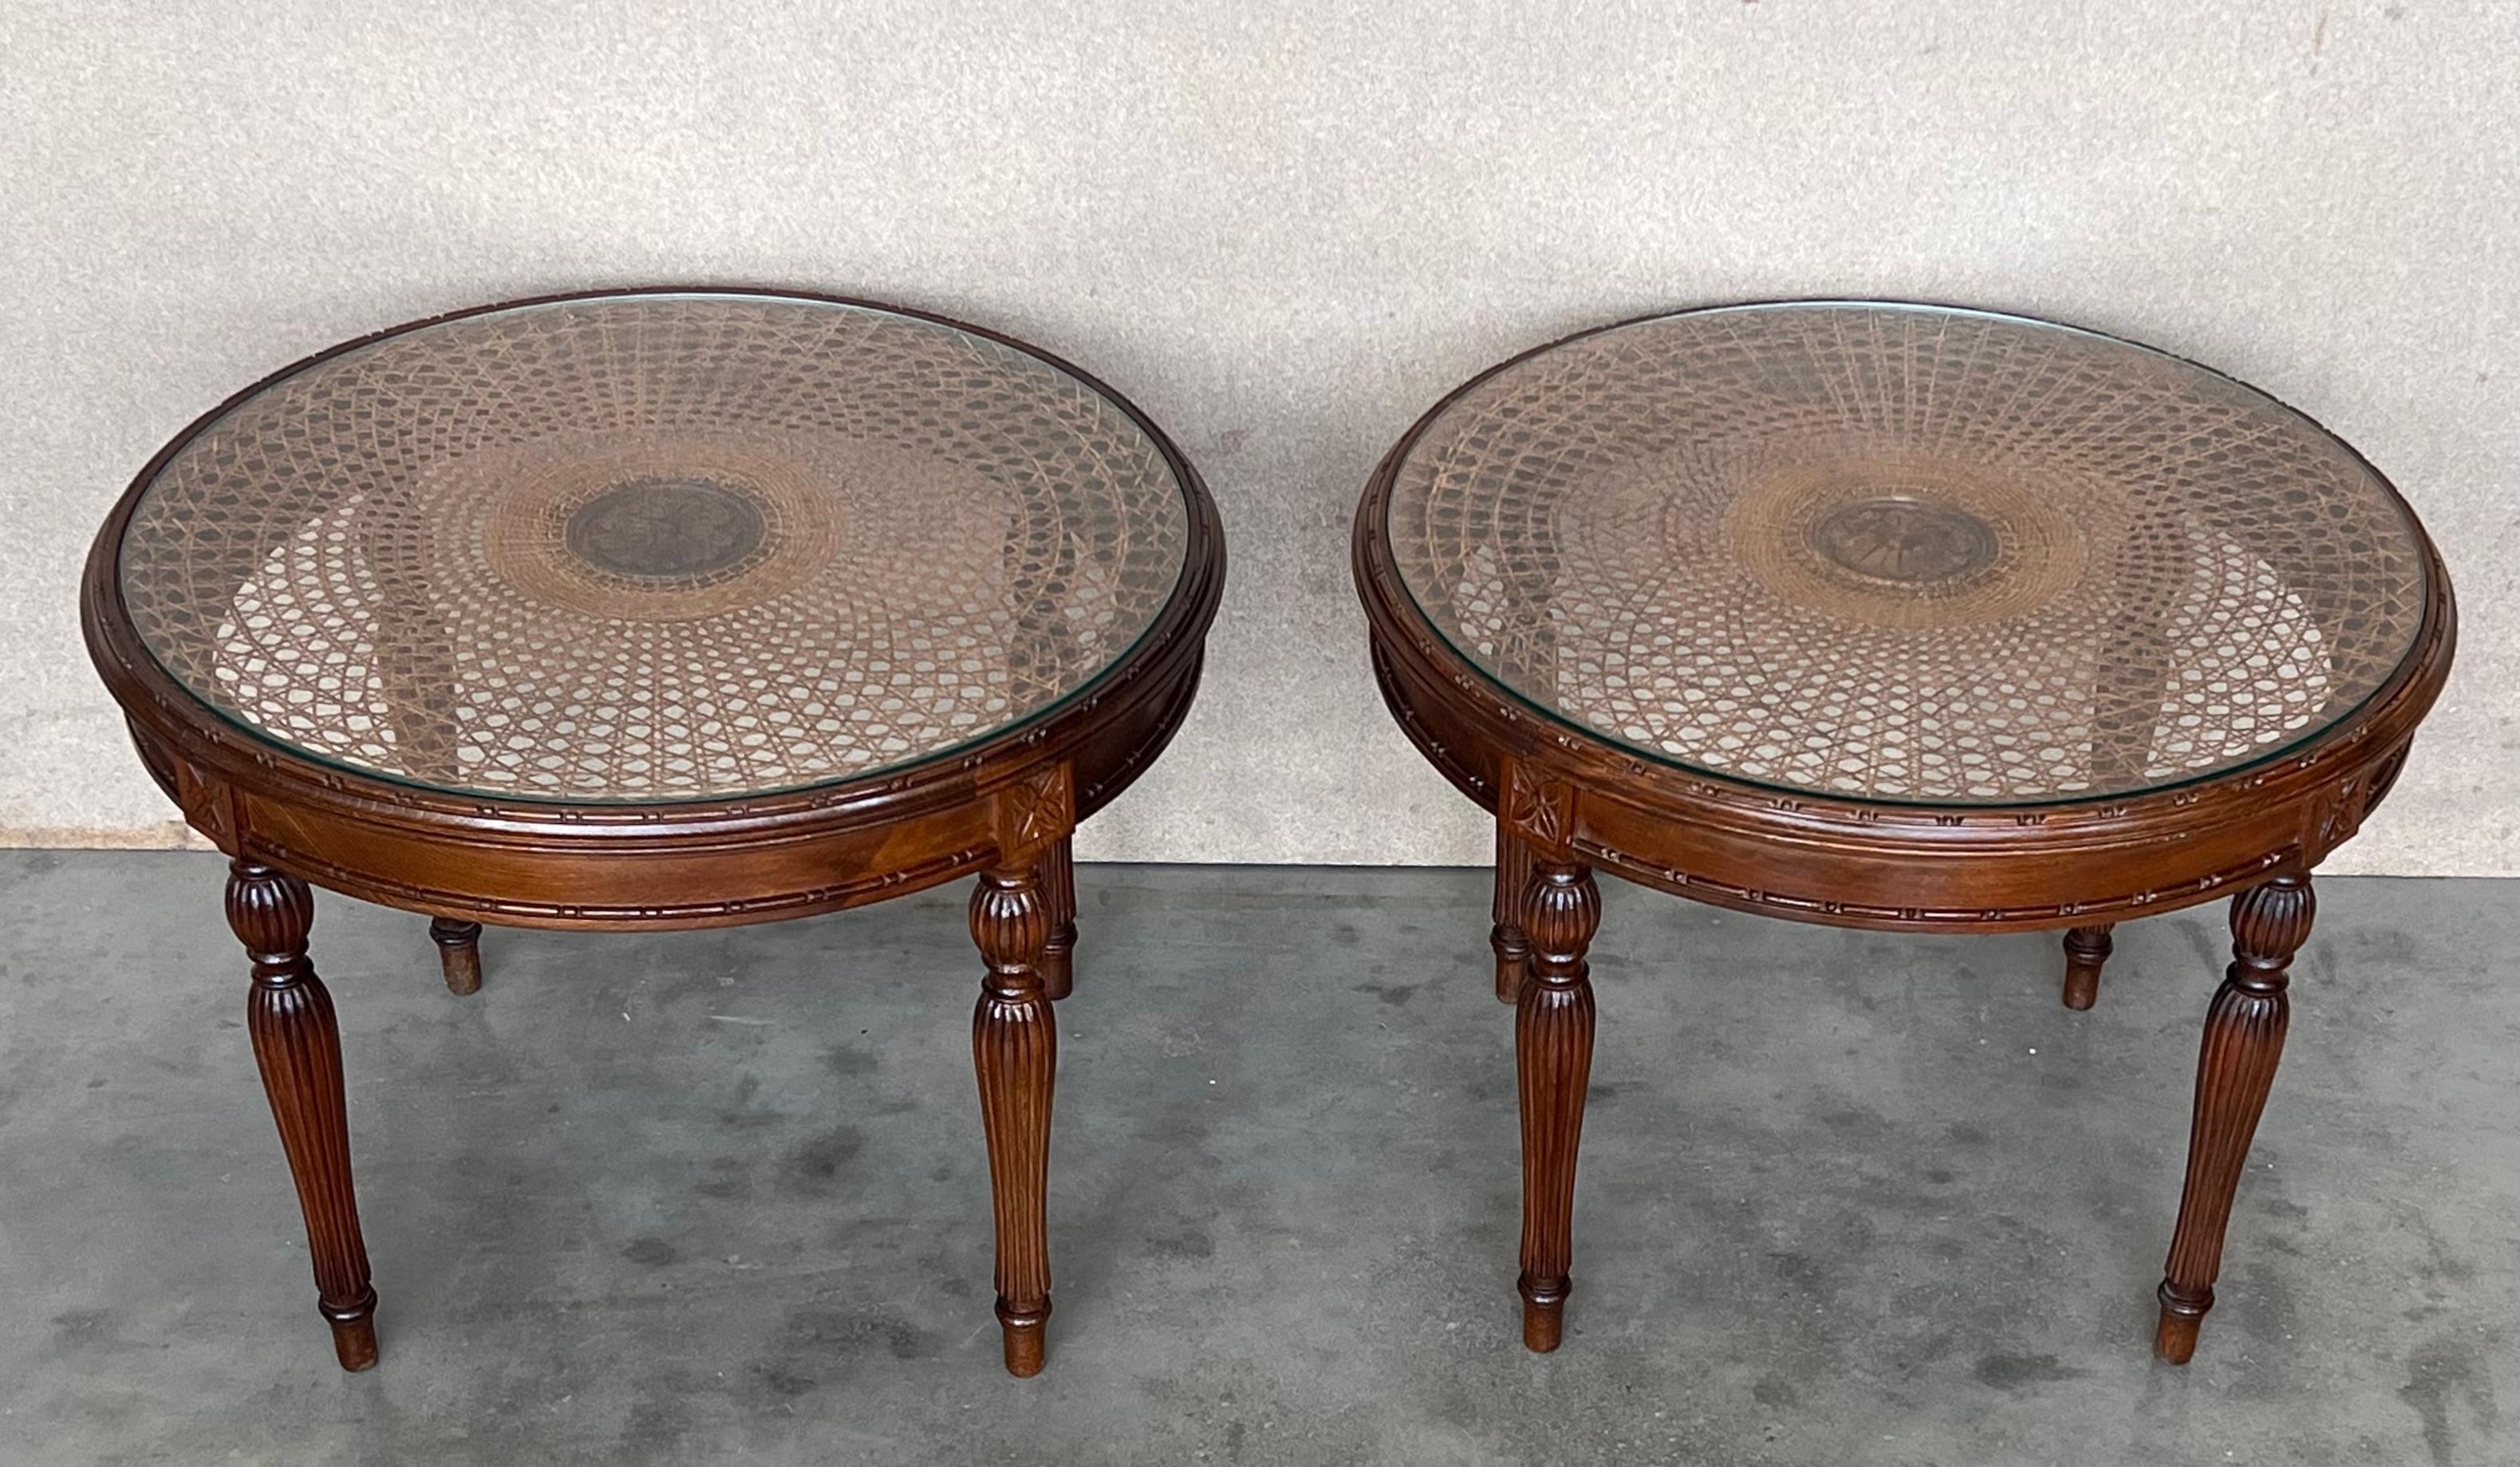 Verre Paire de tables d'appoint ou de tables basses rondes françaises avec plateau en osier et pieds sculptés en vente